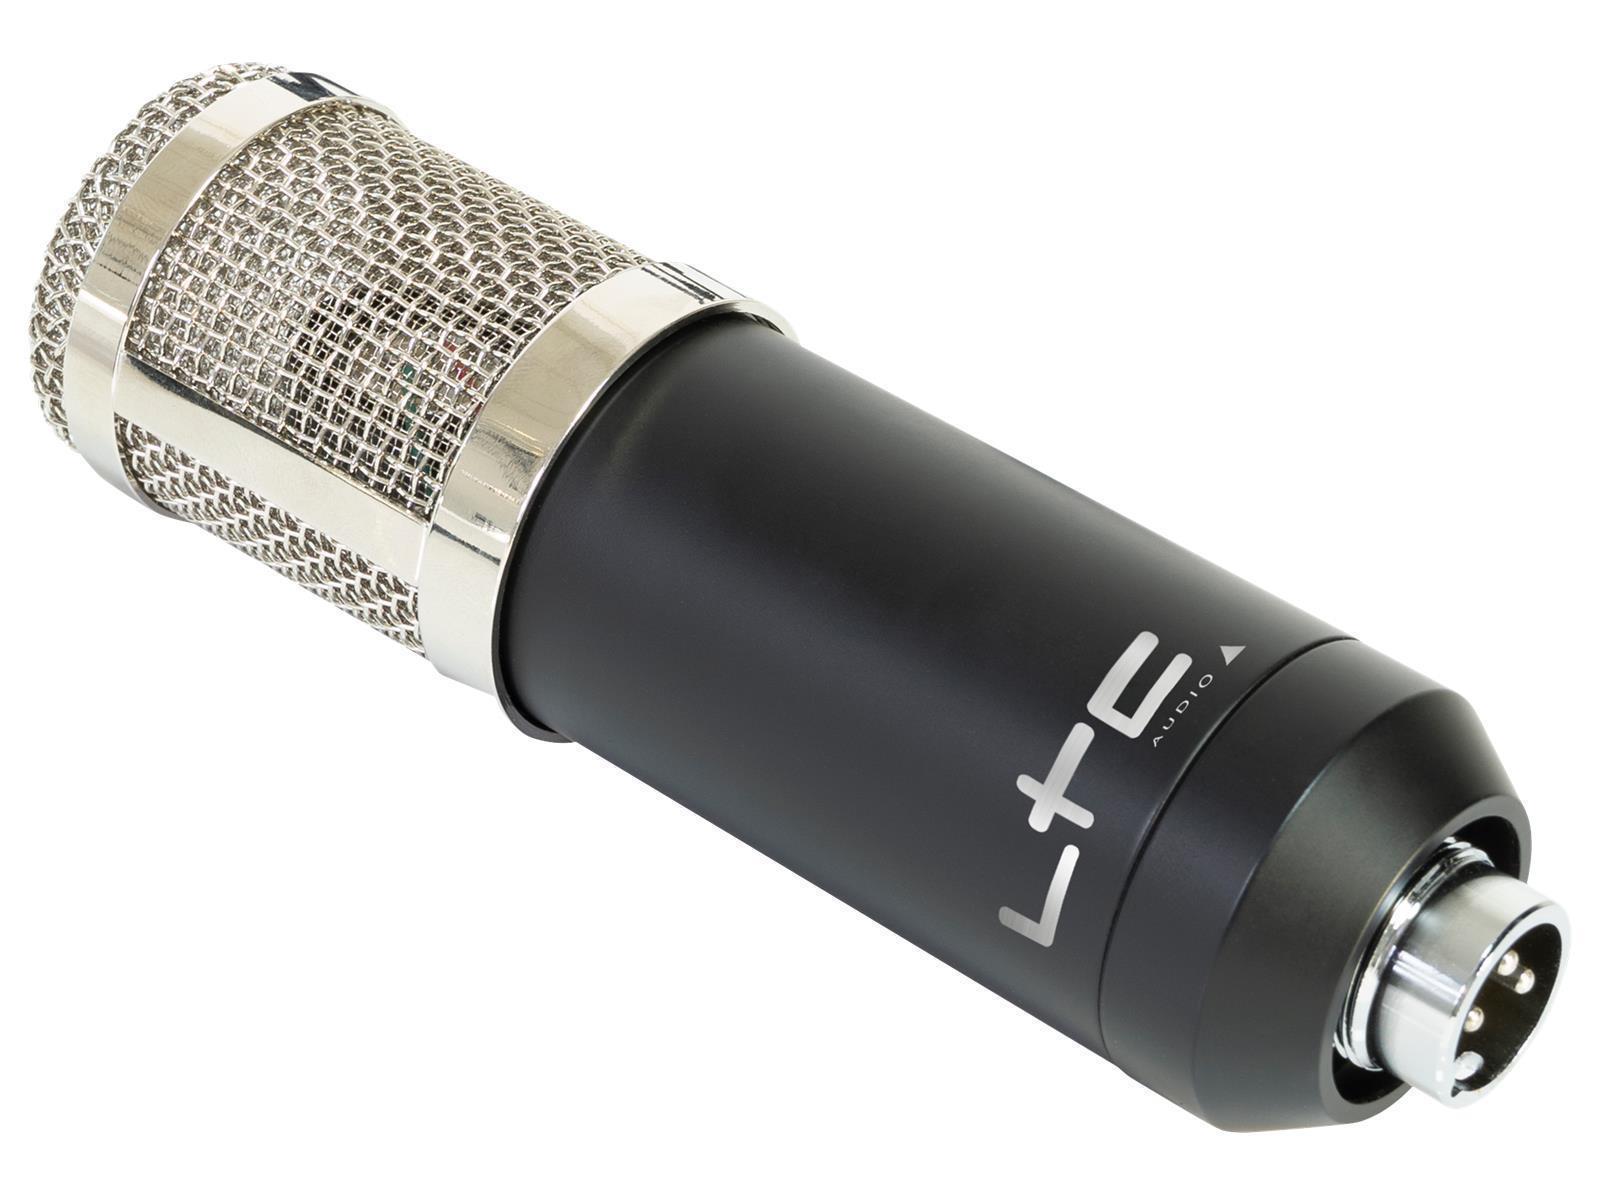 Mikrofon LTC ''STM200-Plus'' ideal für z.B. Podcast oder Streaming, Plug&Play, USB